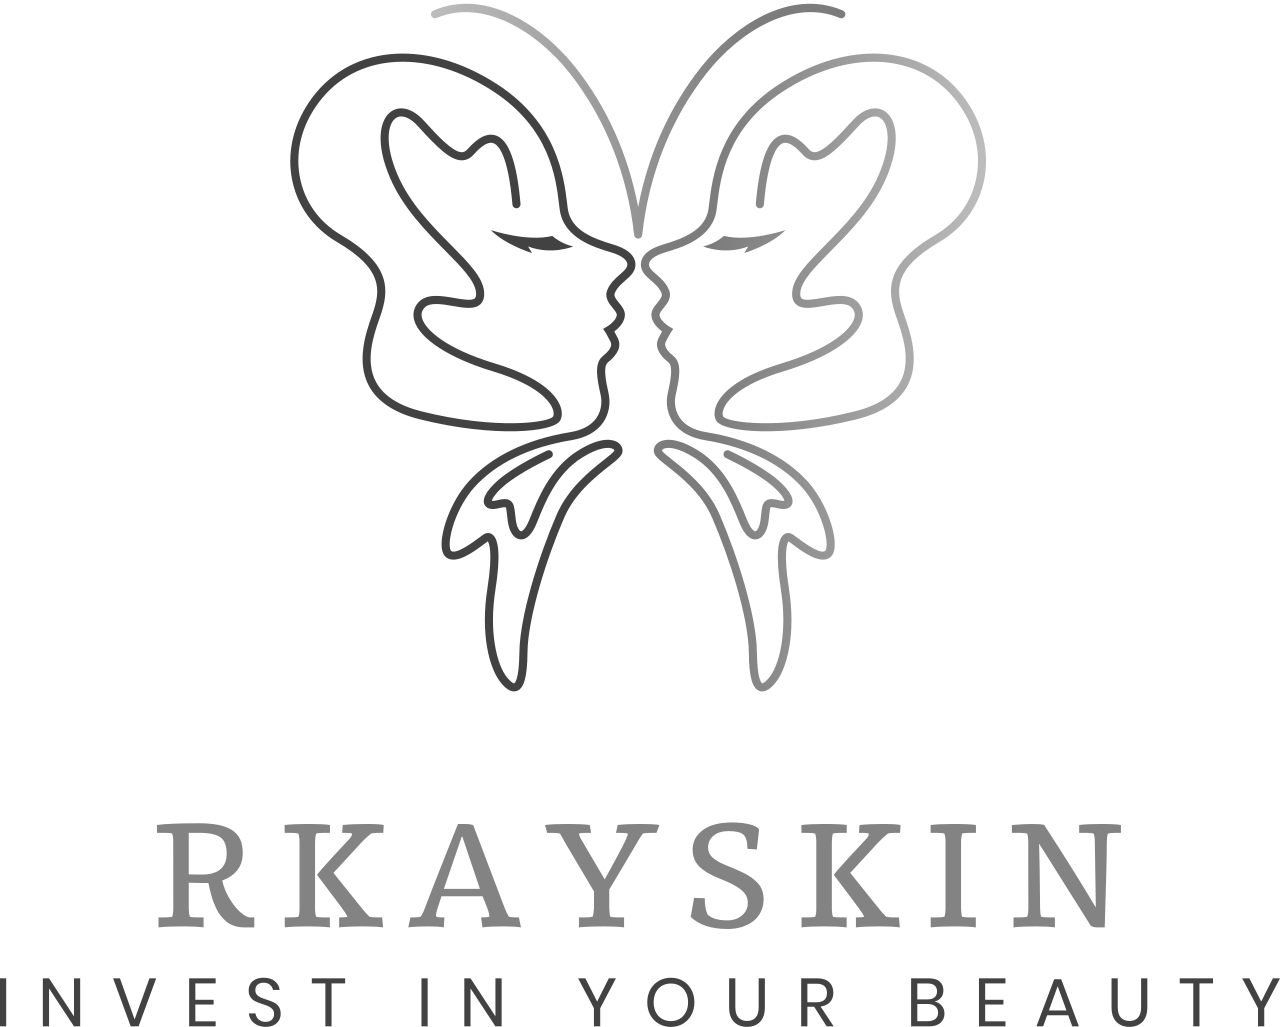 Rkayskin's web page